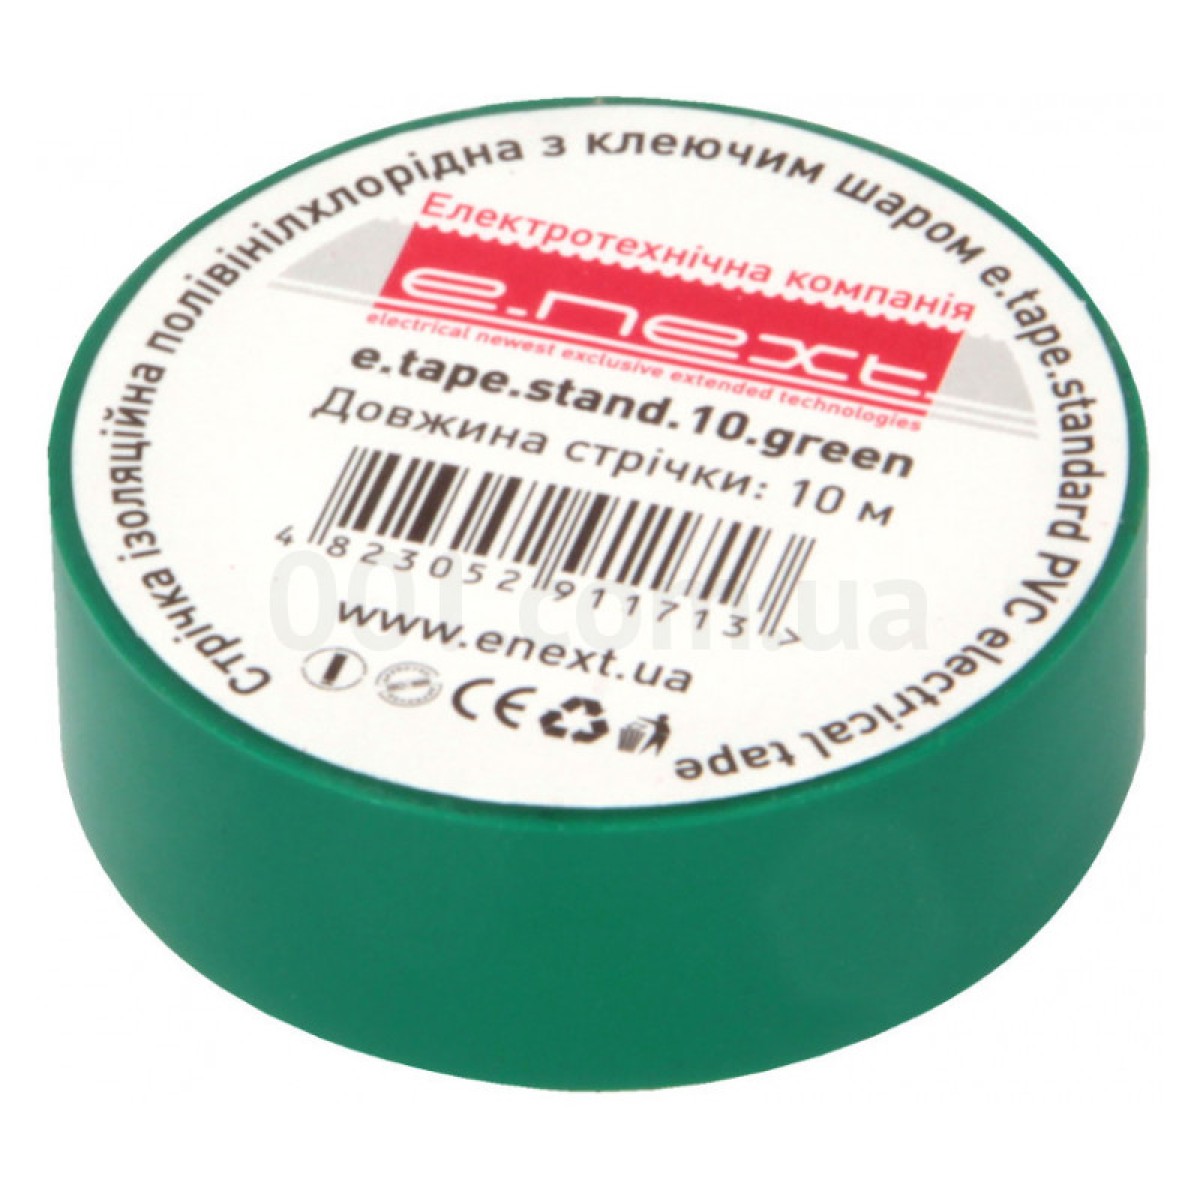 Ізострічка 0,13×19 мм зелена (10 м) e.tape.stand.10.green, E.NEXT 256_256.jpg